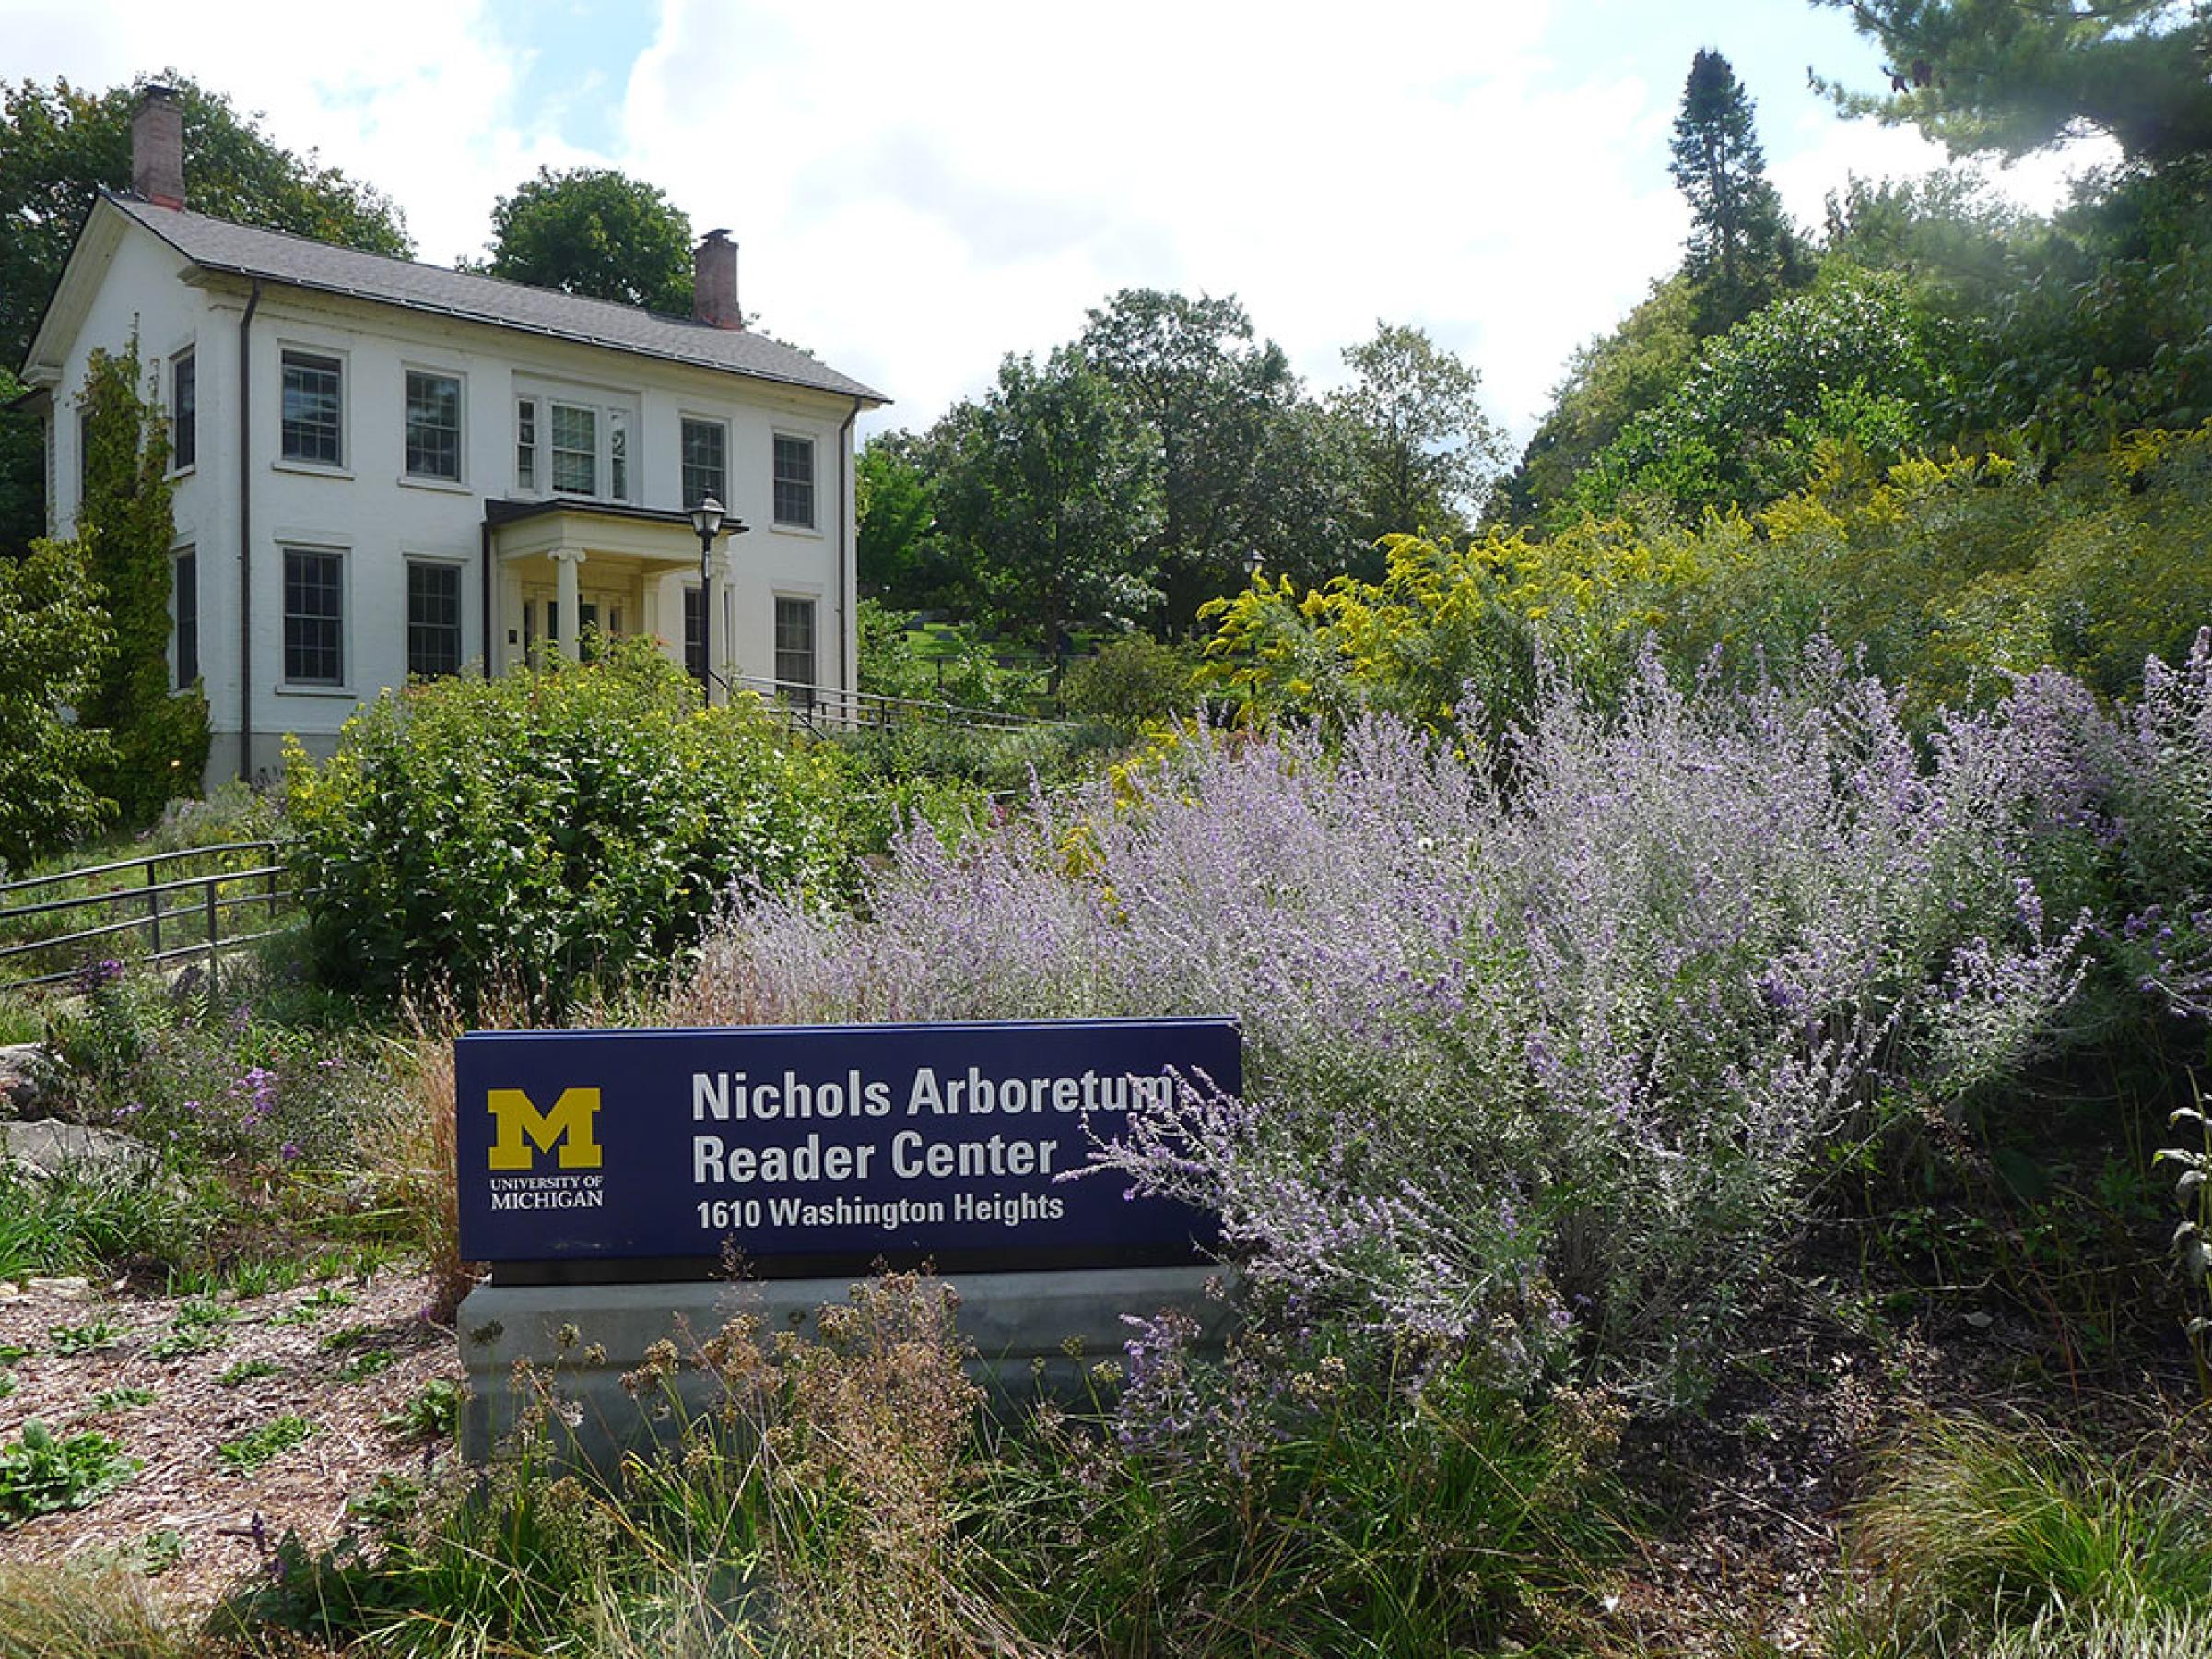 The Reader Center at Nichols Arboretum